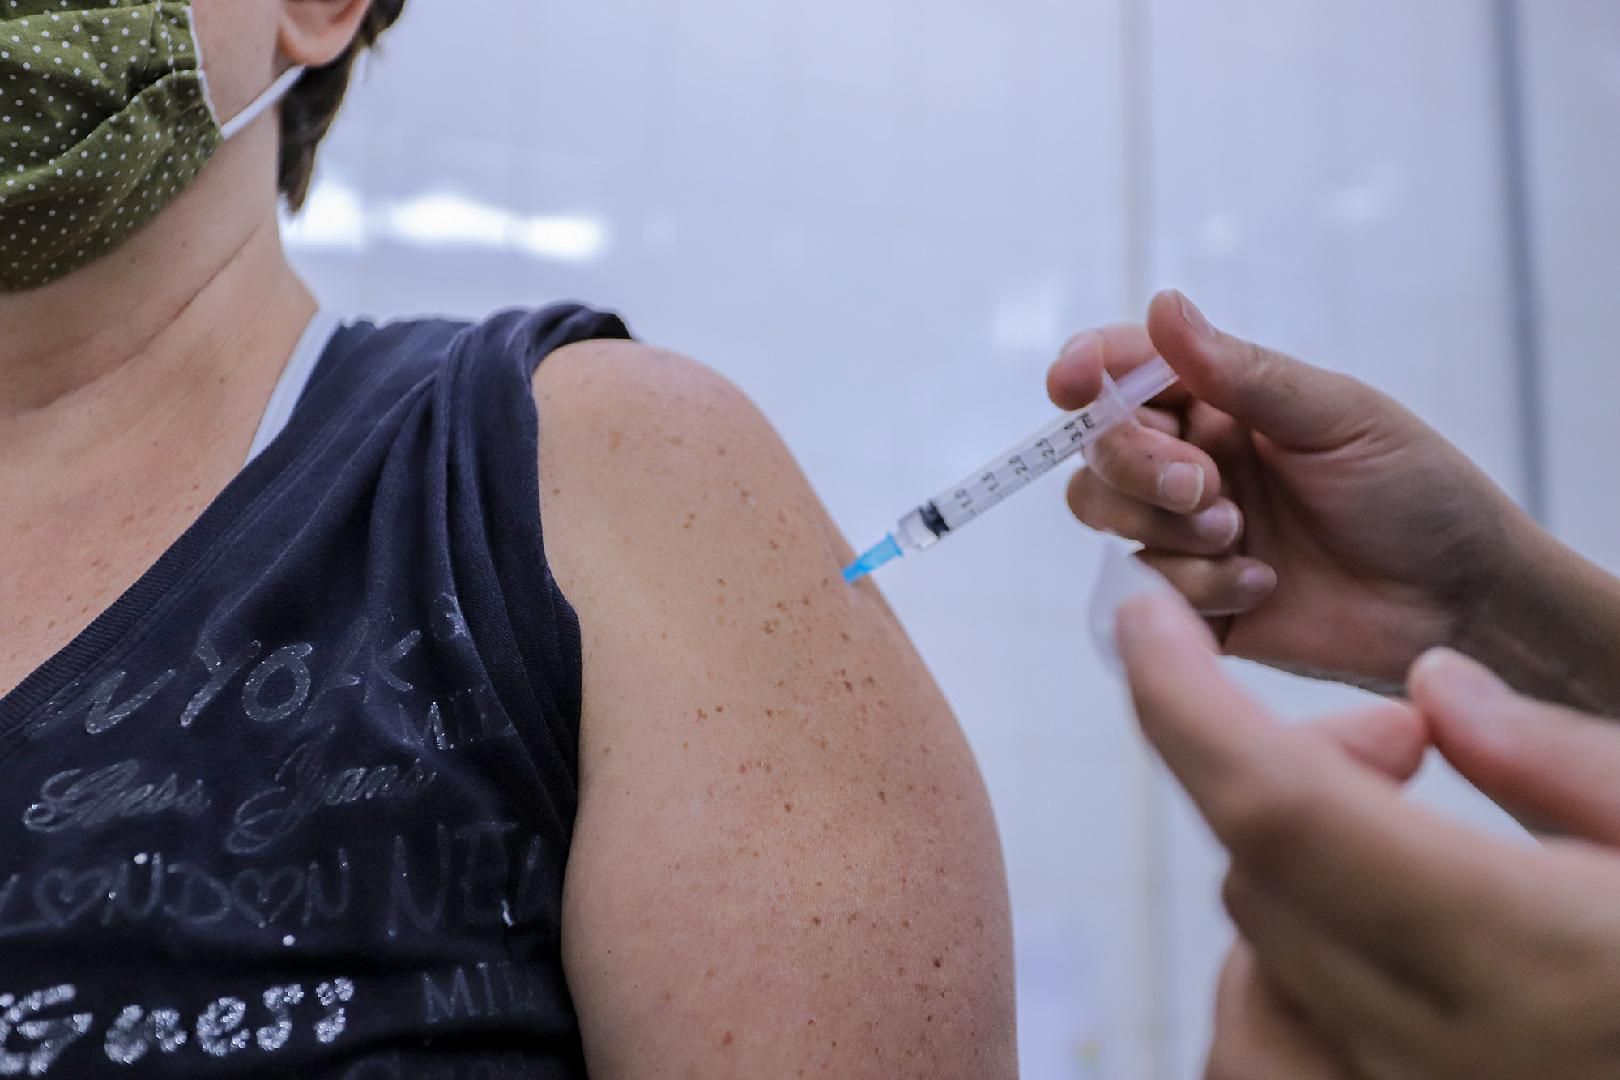 Vacinação contra gripe Influenza em Ribeirão Preto está com baixa adesão